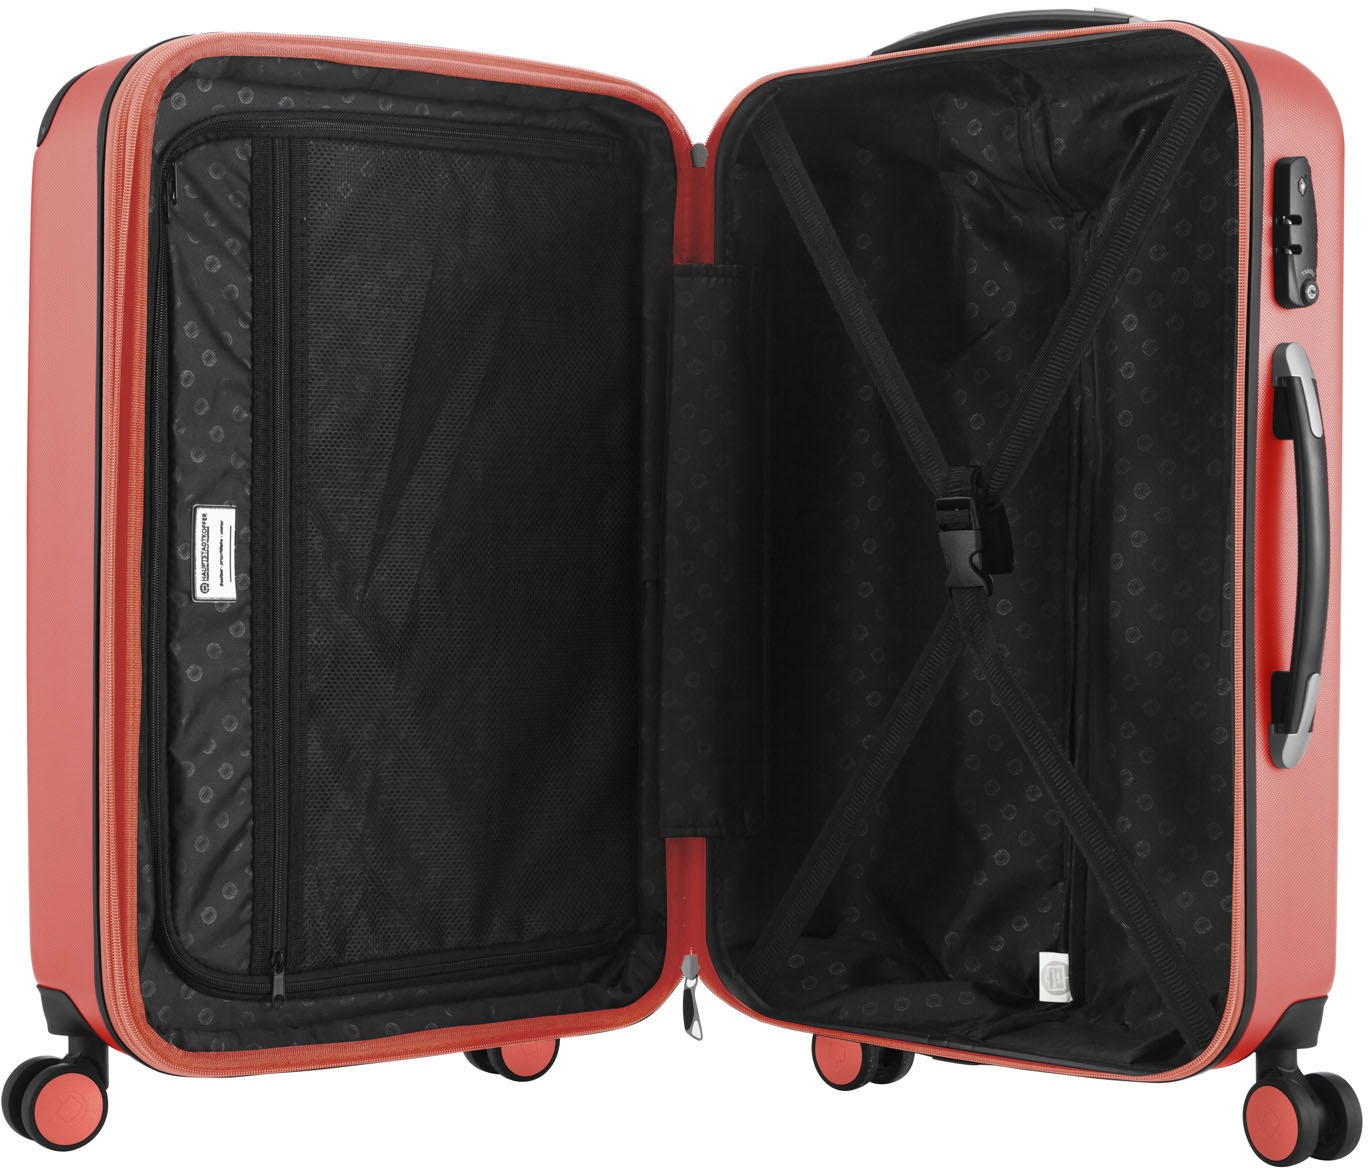 Hauptstadtkoffer Hartschalen-Trolley »Spree, 65 cm, korall«, 4 Rollen, Hartschalen-Koffer Koffer mittel groß Reisegepäck TSA Schloss